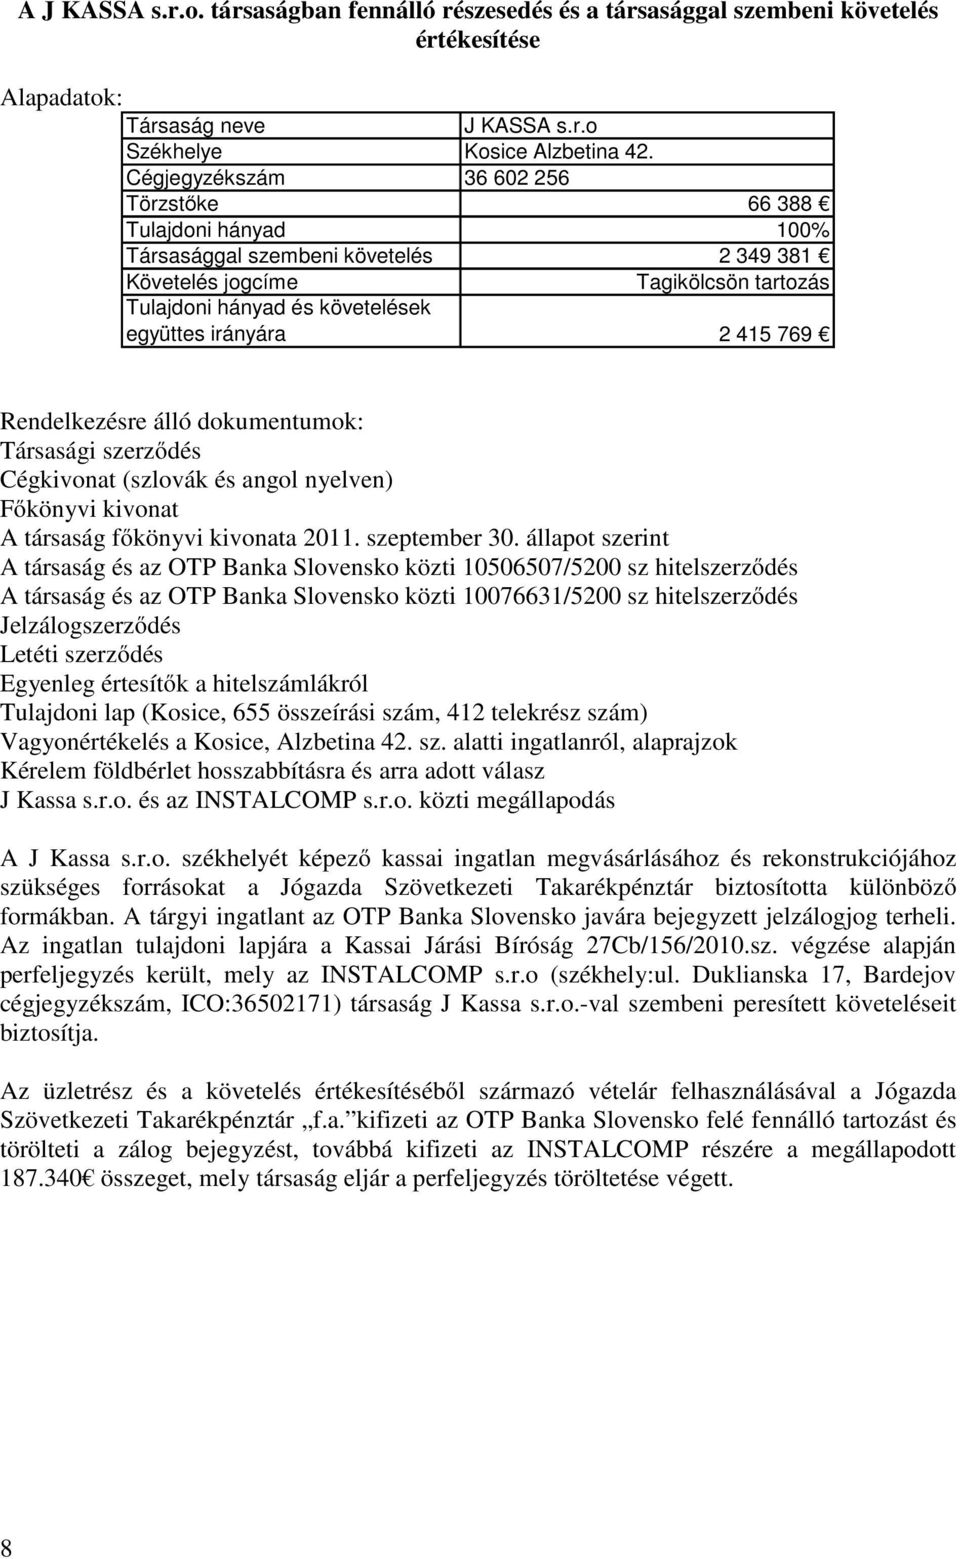 415 769 Rendelkezésre álló dokumentumok: Társasági szerződés Cégkivonat (szlovák és angol nyelven) Főkönyvi kivonat A társaság főkönyvi kivonata 2011. szeptember 30.